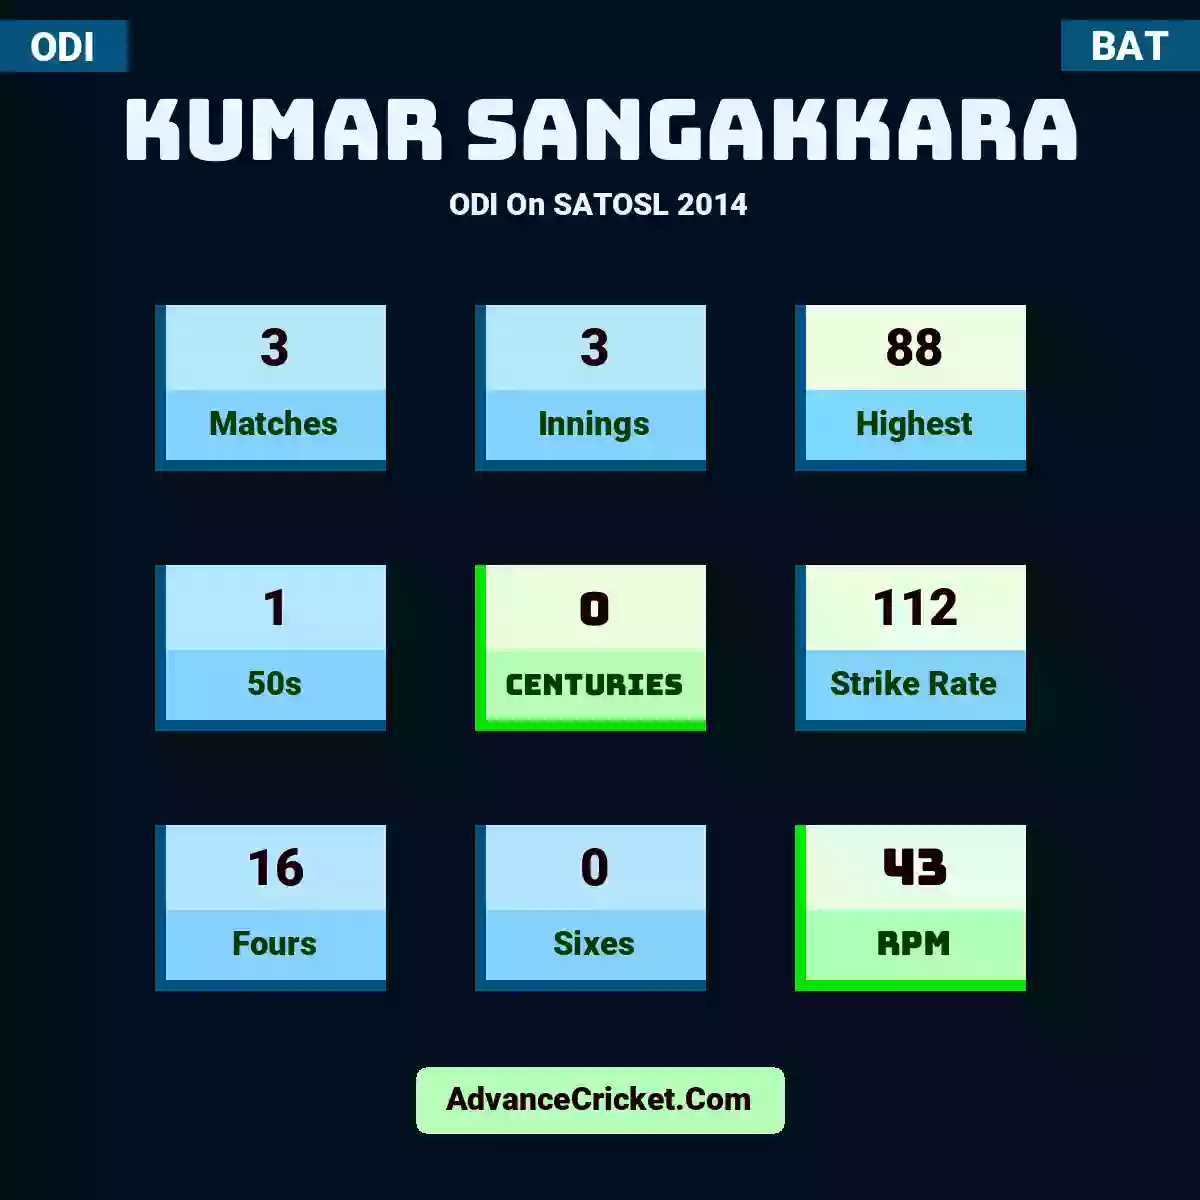 Kumar Sangakkara ODI  On SATOSL 2014, Kumar Sangakkara played 3 matches, scored 88 runs as highest, 1 half-centuries, and 0 centuries, with a strike rate of 112. K.Sangakkara hit 16 fours and 0 sixes, with an RPM of 43.